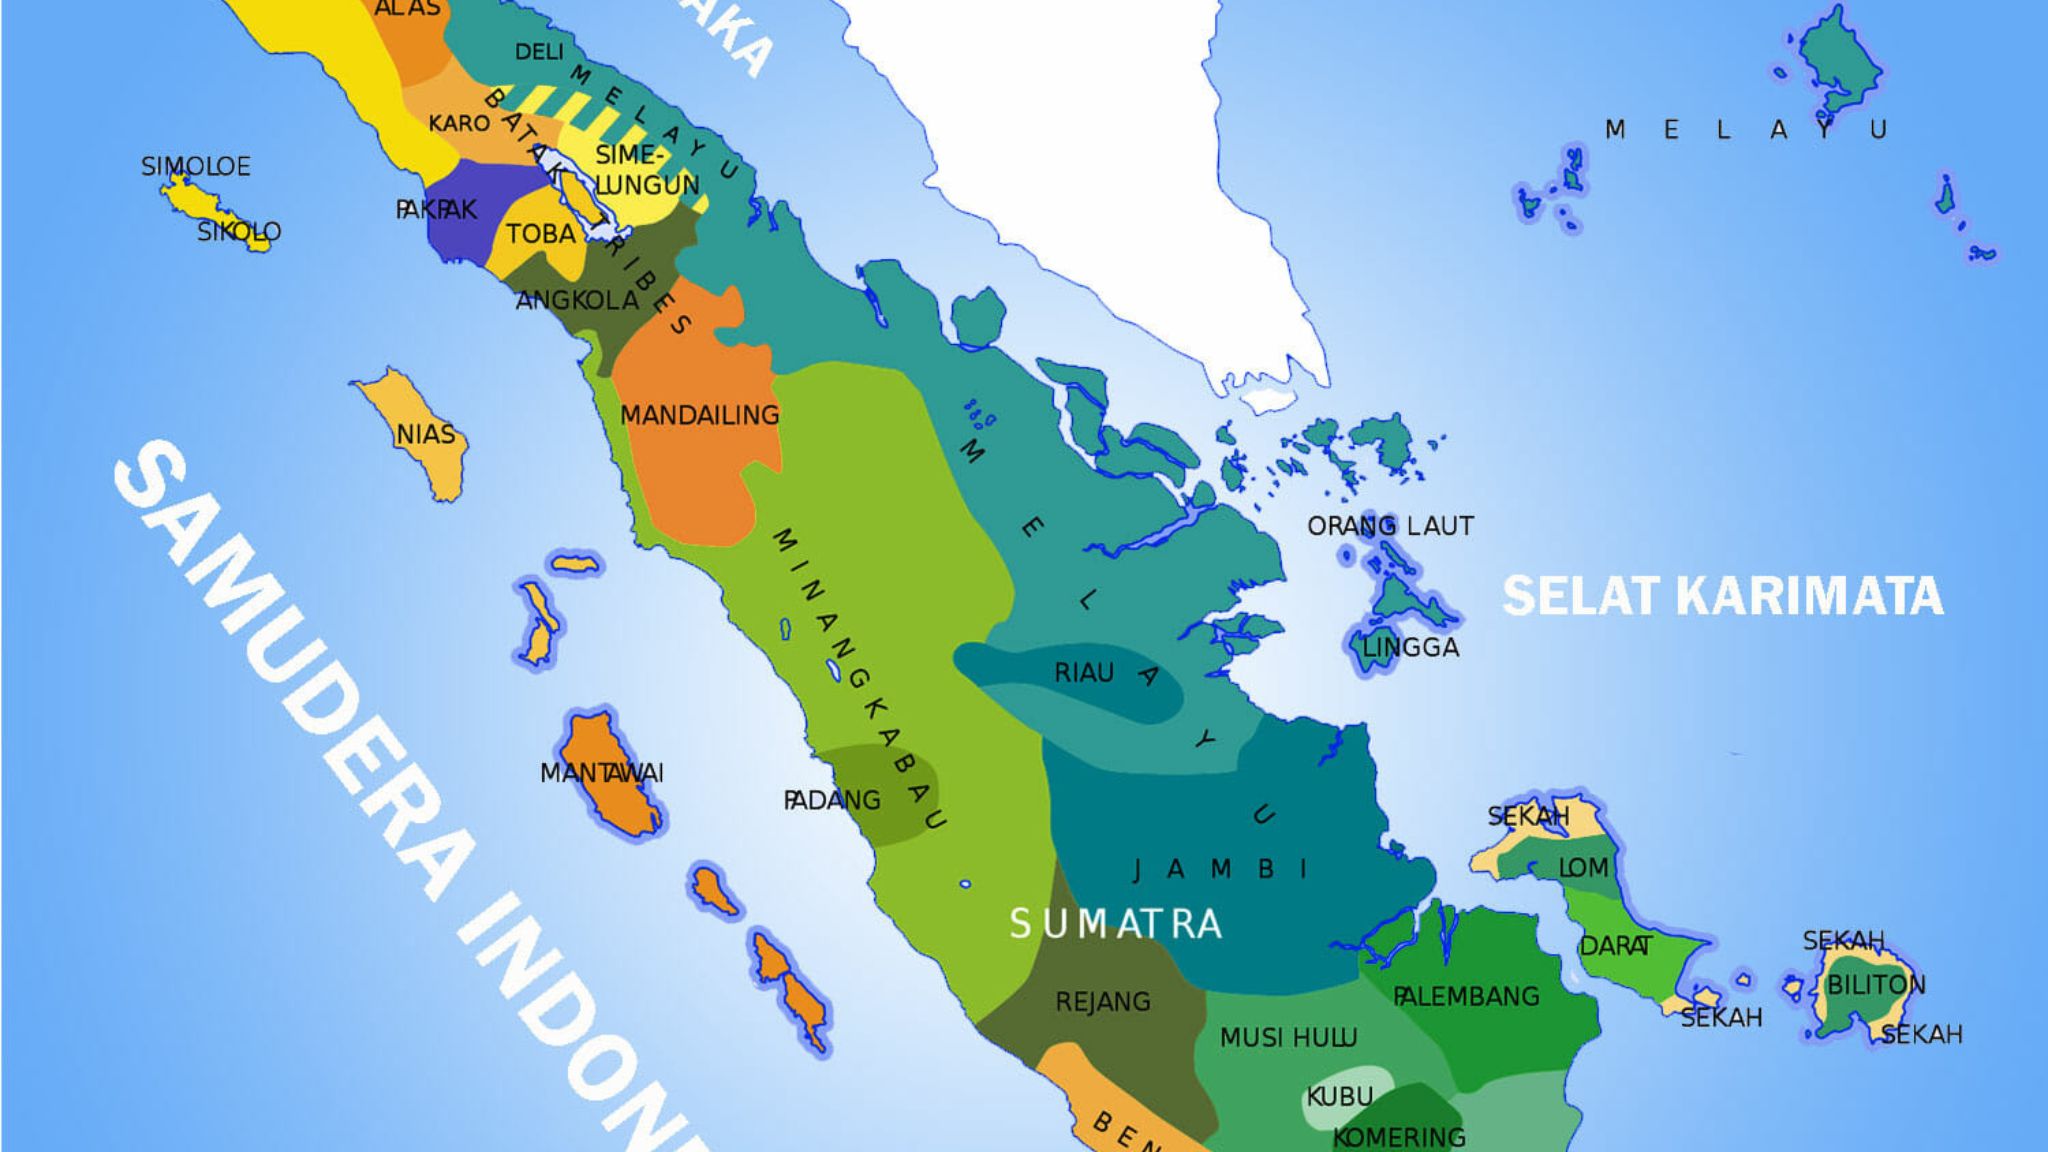 Sejarah Pembentukan Provinsi di Sumatra: Berawal dari 3 Provinsi sampai Menjadi 10 Provinsi